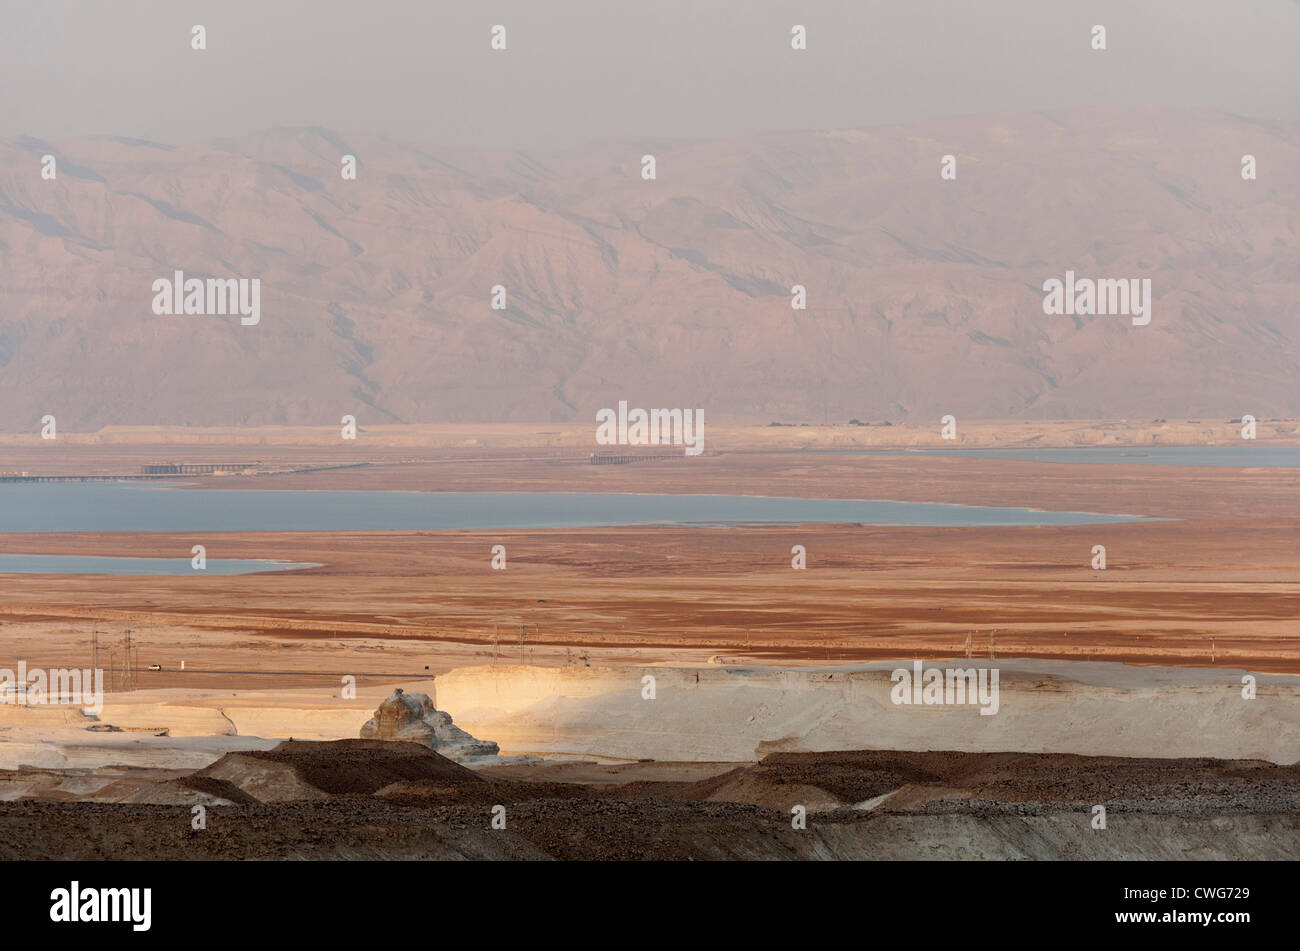 Ein Blick auf die Wüste, das Tote Meer und die Berge von Jordanien in der Ferne. Stockfoto